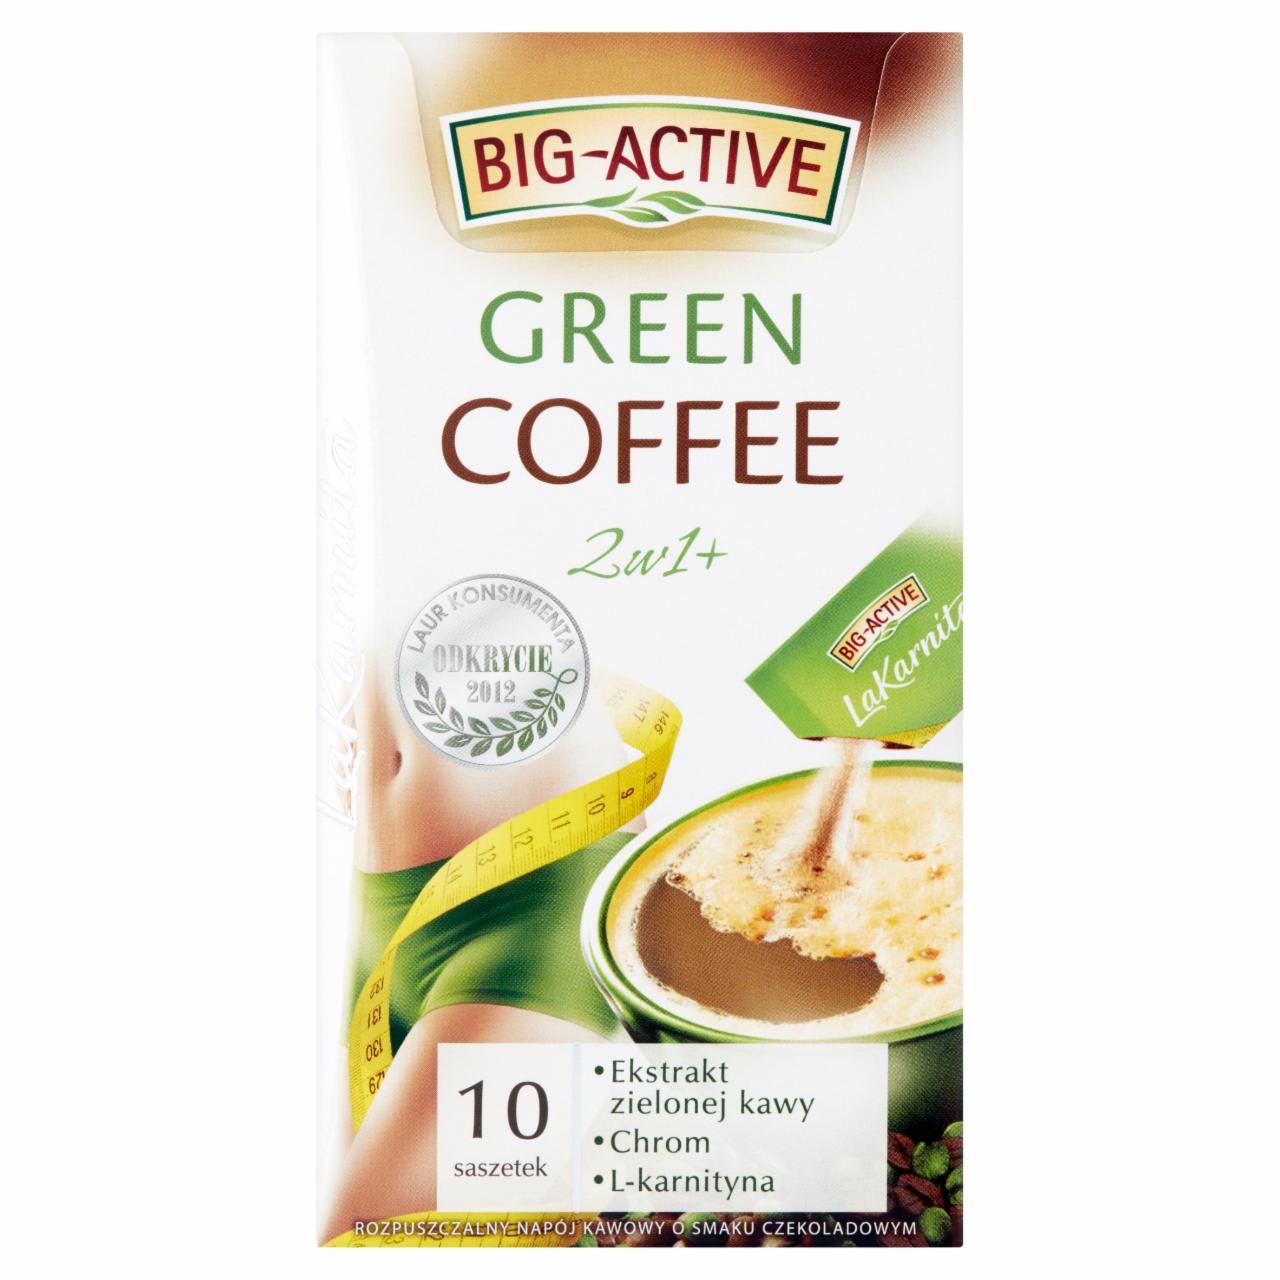 Zdjęcia - Big-Active La Karnita Green Coffee 2w1+ Rozpuszczalny napój kawowy 120 g (10 x 12 g)